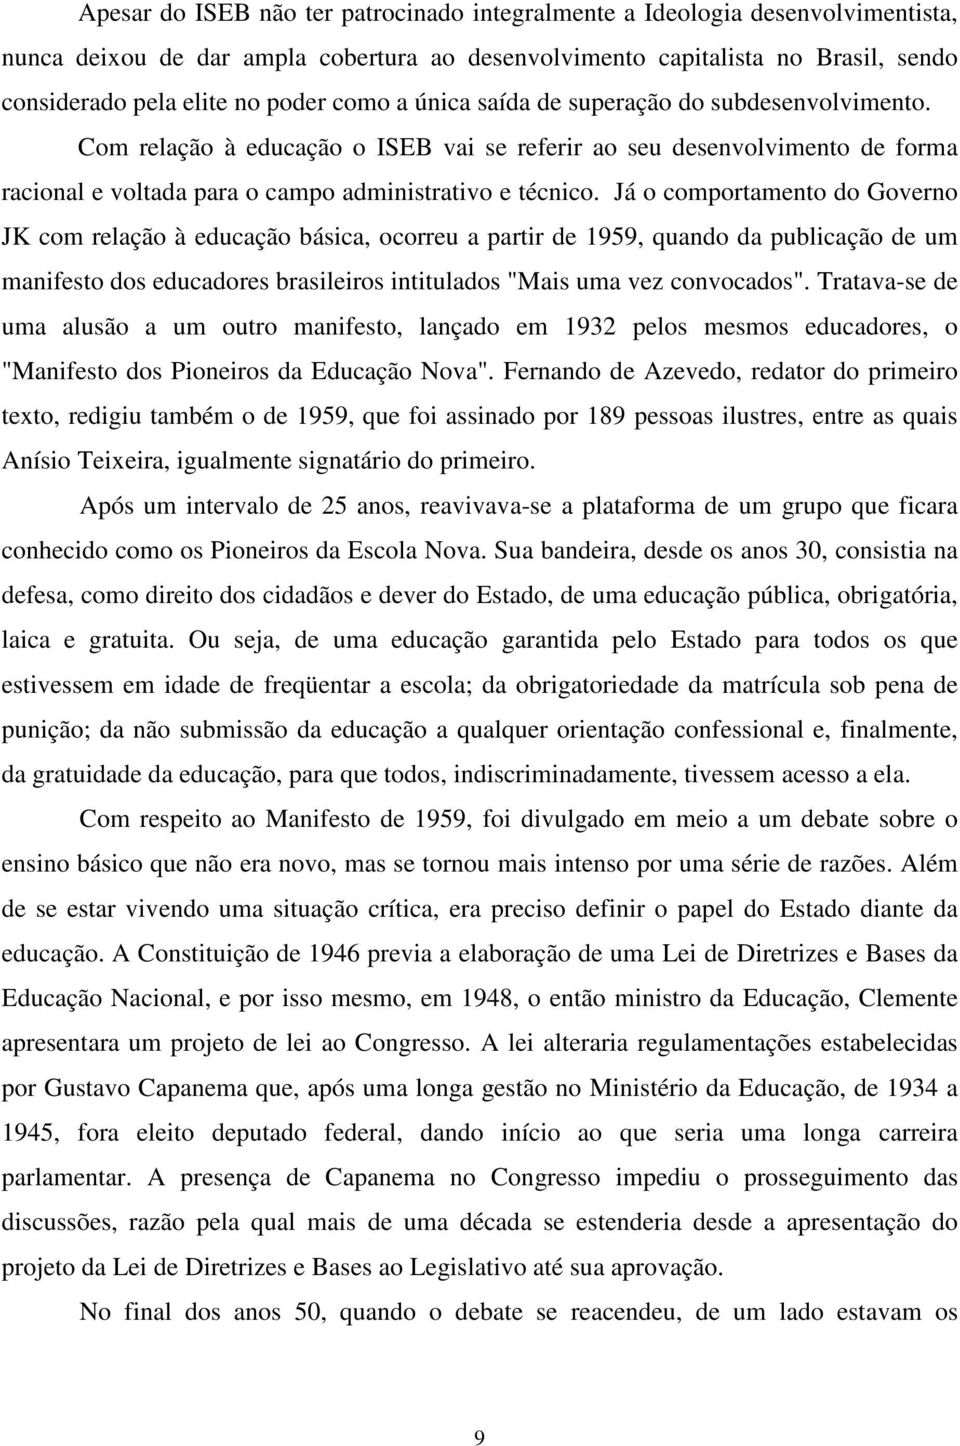 Já o comportamento do Governo JK com relação à educação básica, ocorreu a partir de 1959, quando da publicação de um manifesto dos educadores brasileiros intitulados "Mais uma vez convocados".